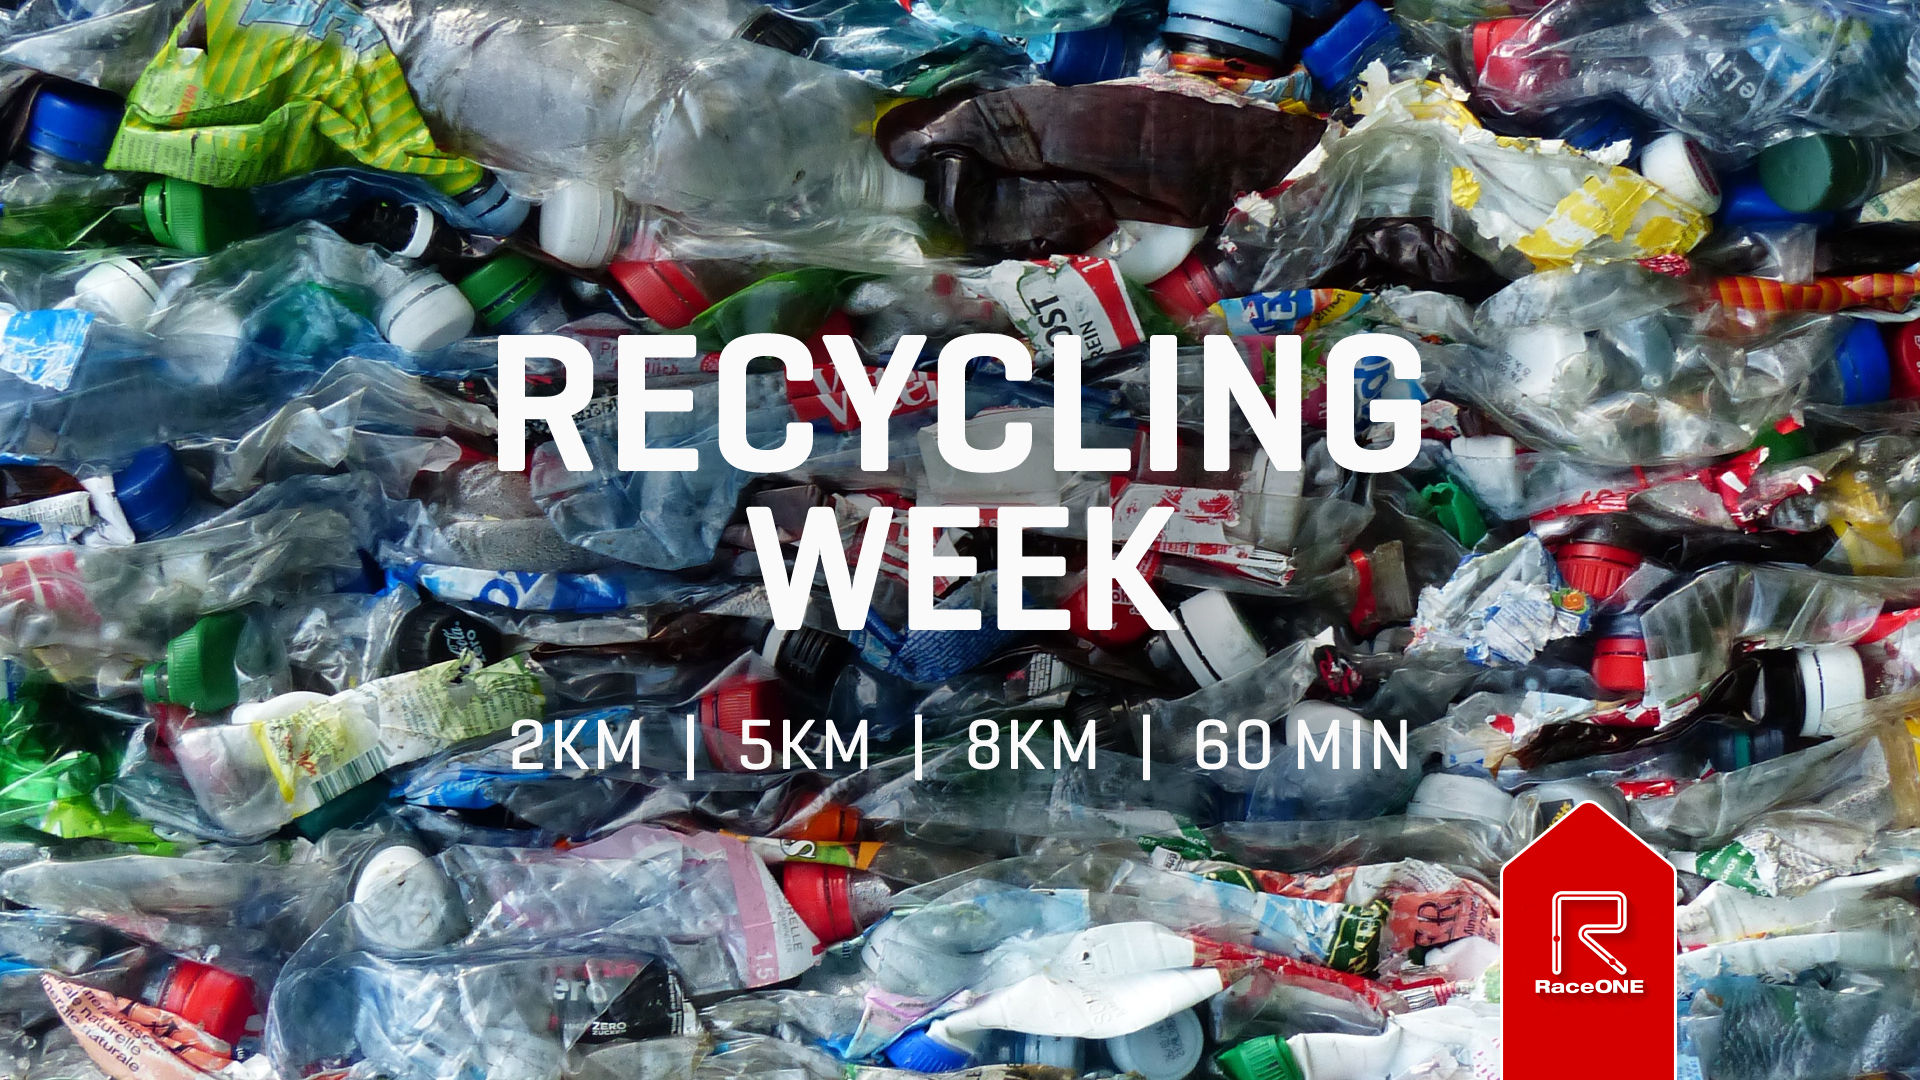 Recycle Week - 5km